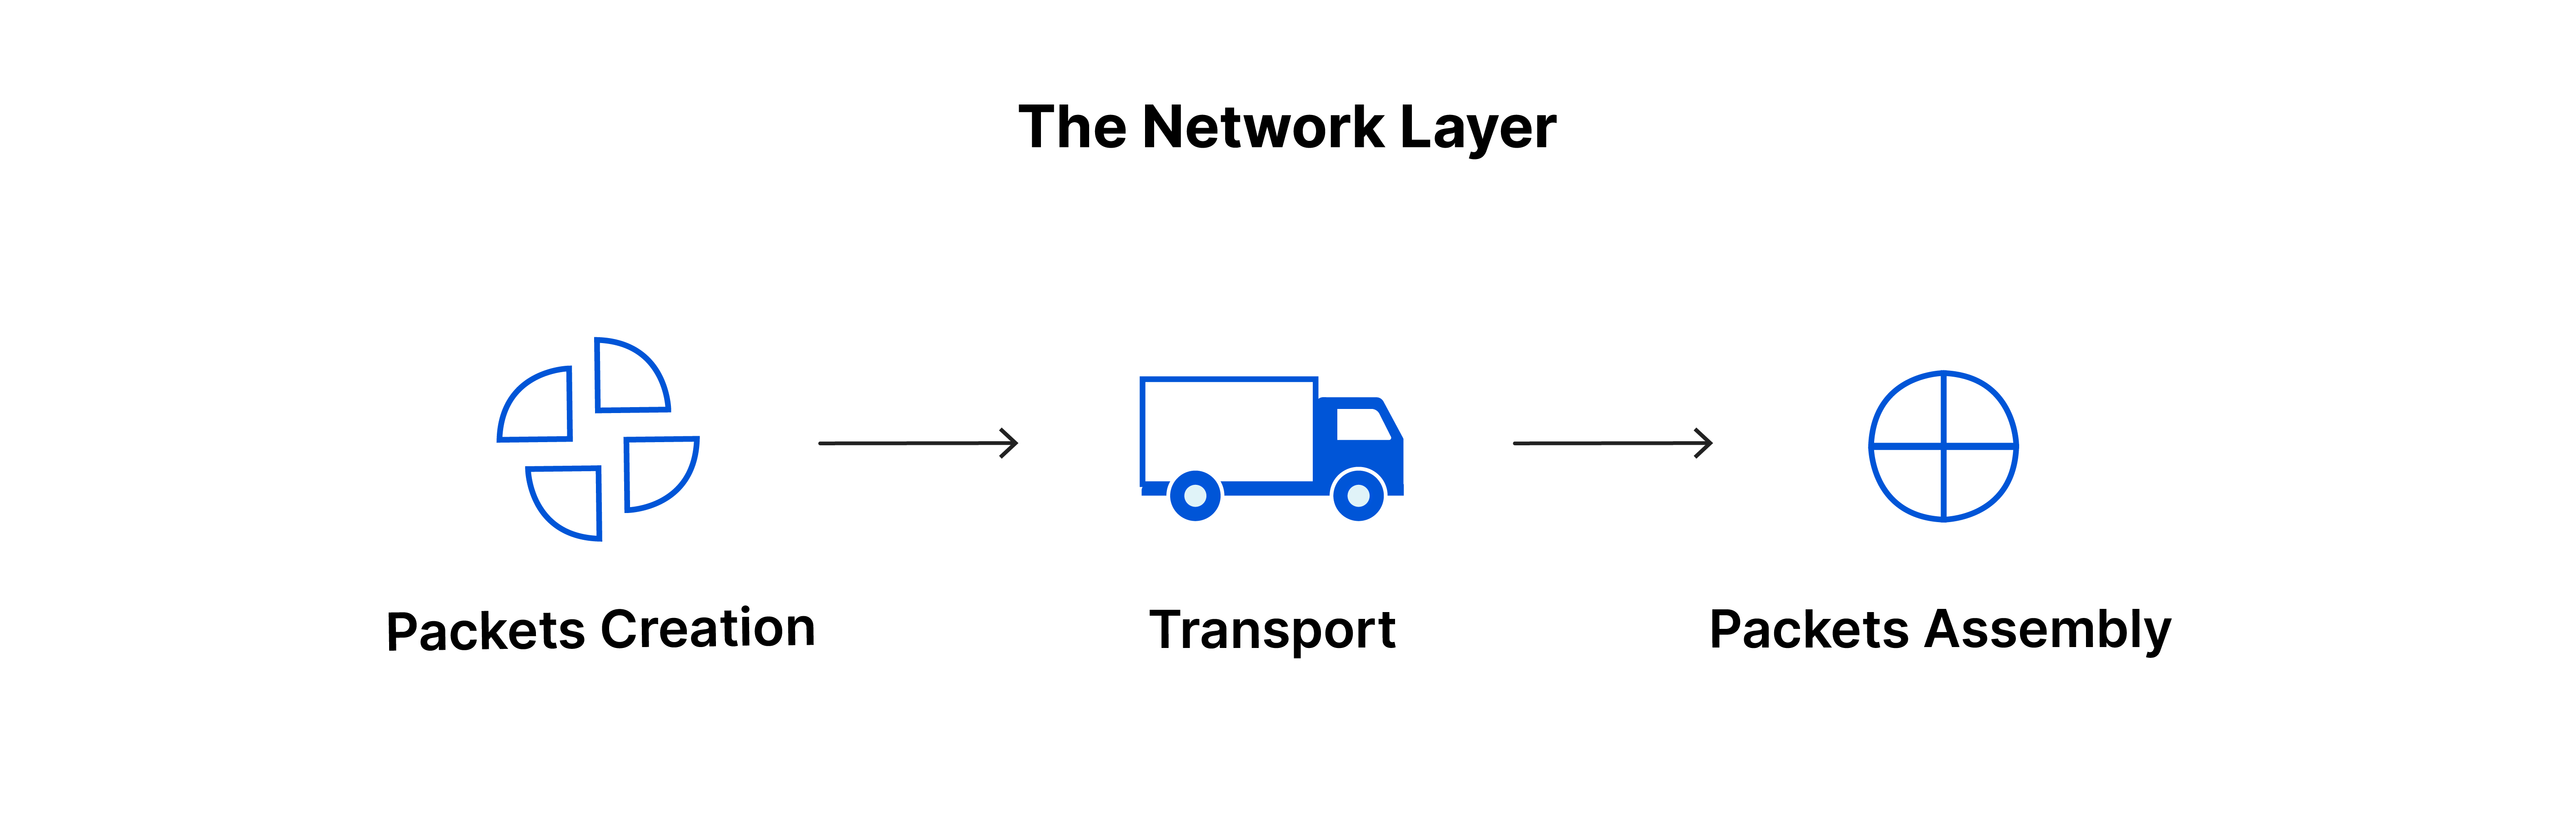 La couche réseau : création de paquets, transport, assemblage de paquets